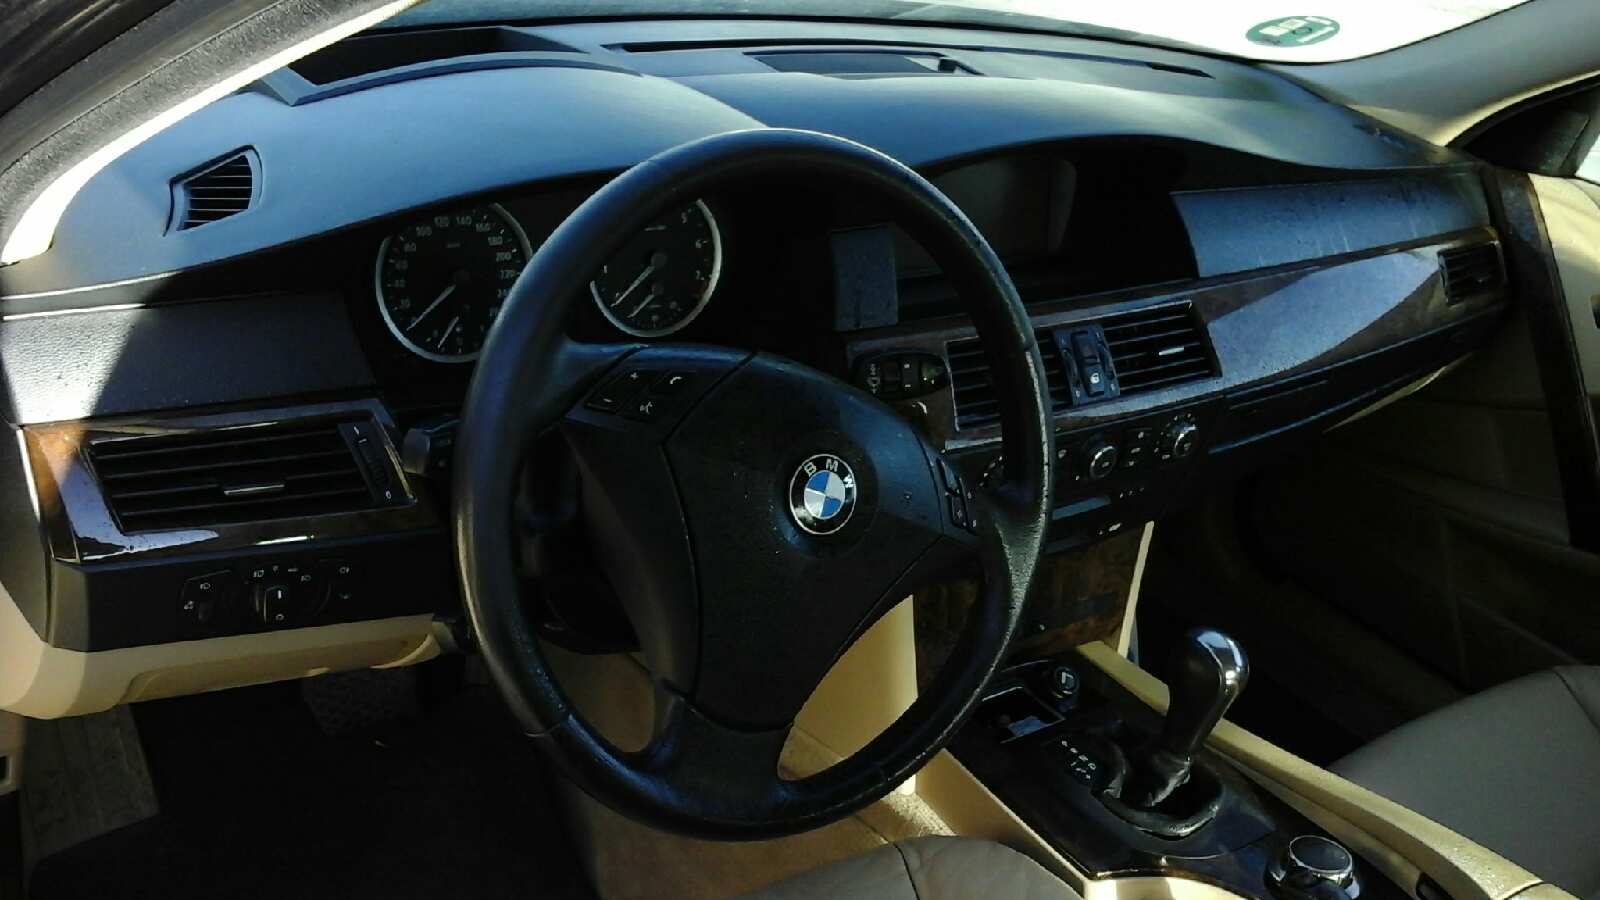 BMW 5 Series E60/E61 (2003-2010) Difūzoriaus ventiliatorius 7726010101, 6726010104, SIEMENSVDO 23657330